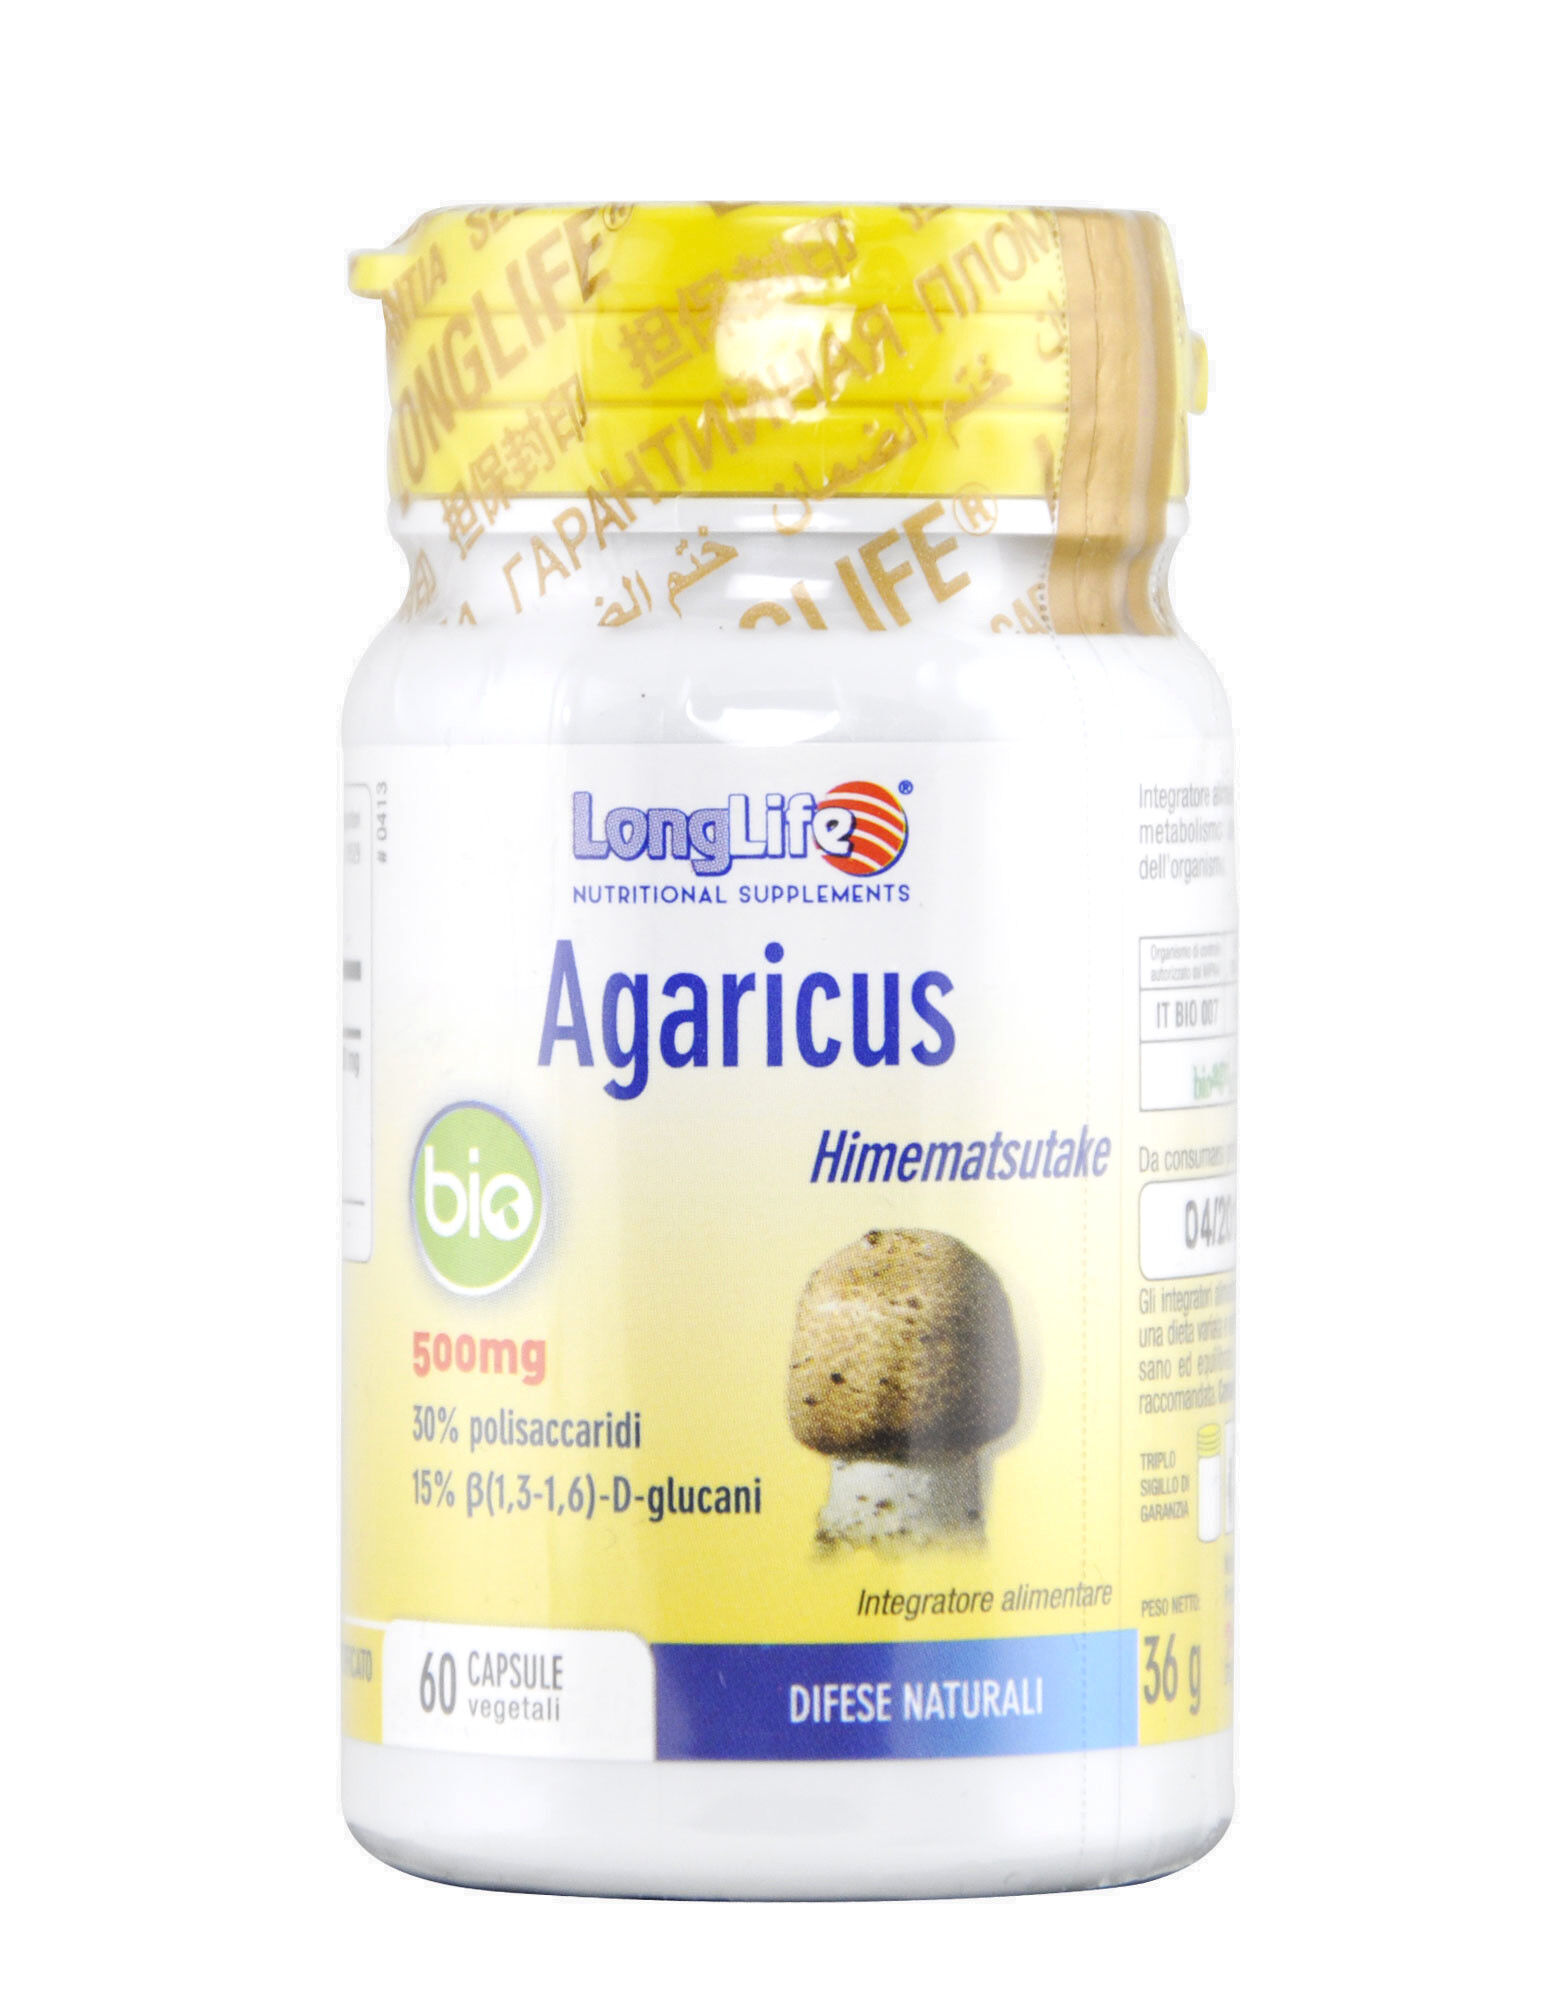 long life agaricus bio 60 capsule